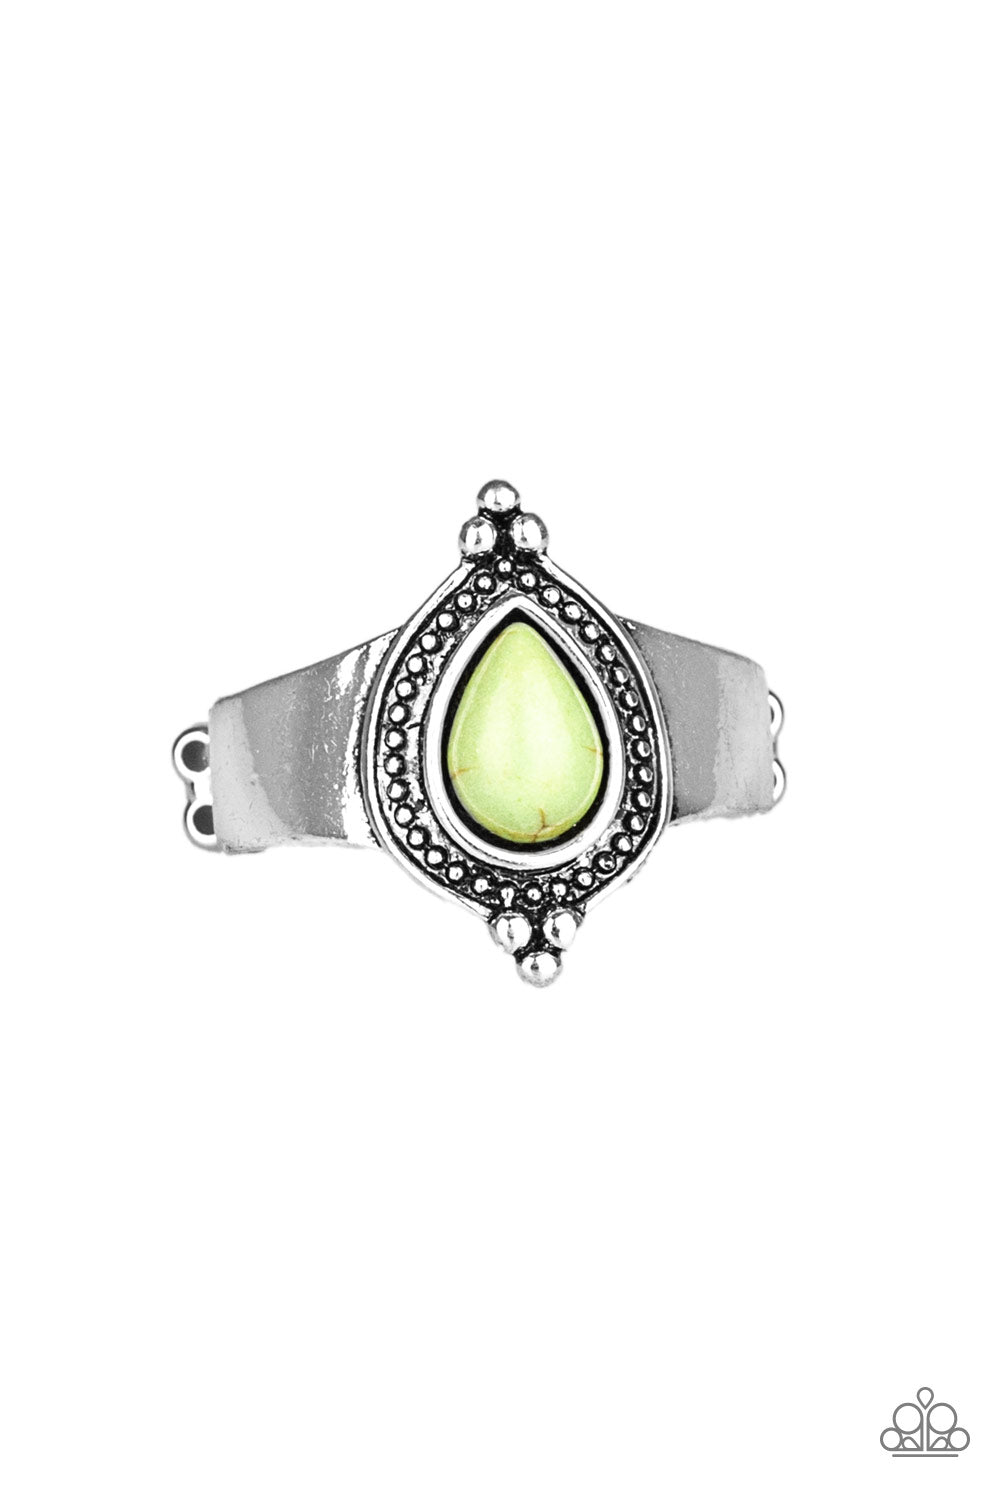 five-dollar-jewelry-mineral-minimalist-green-ring-paparazzi-accessories